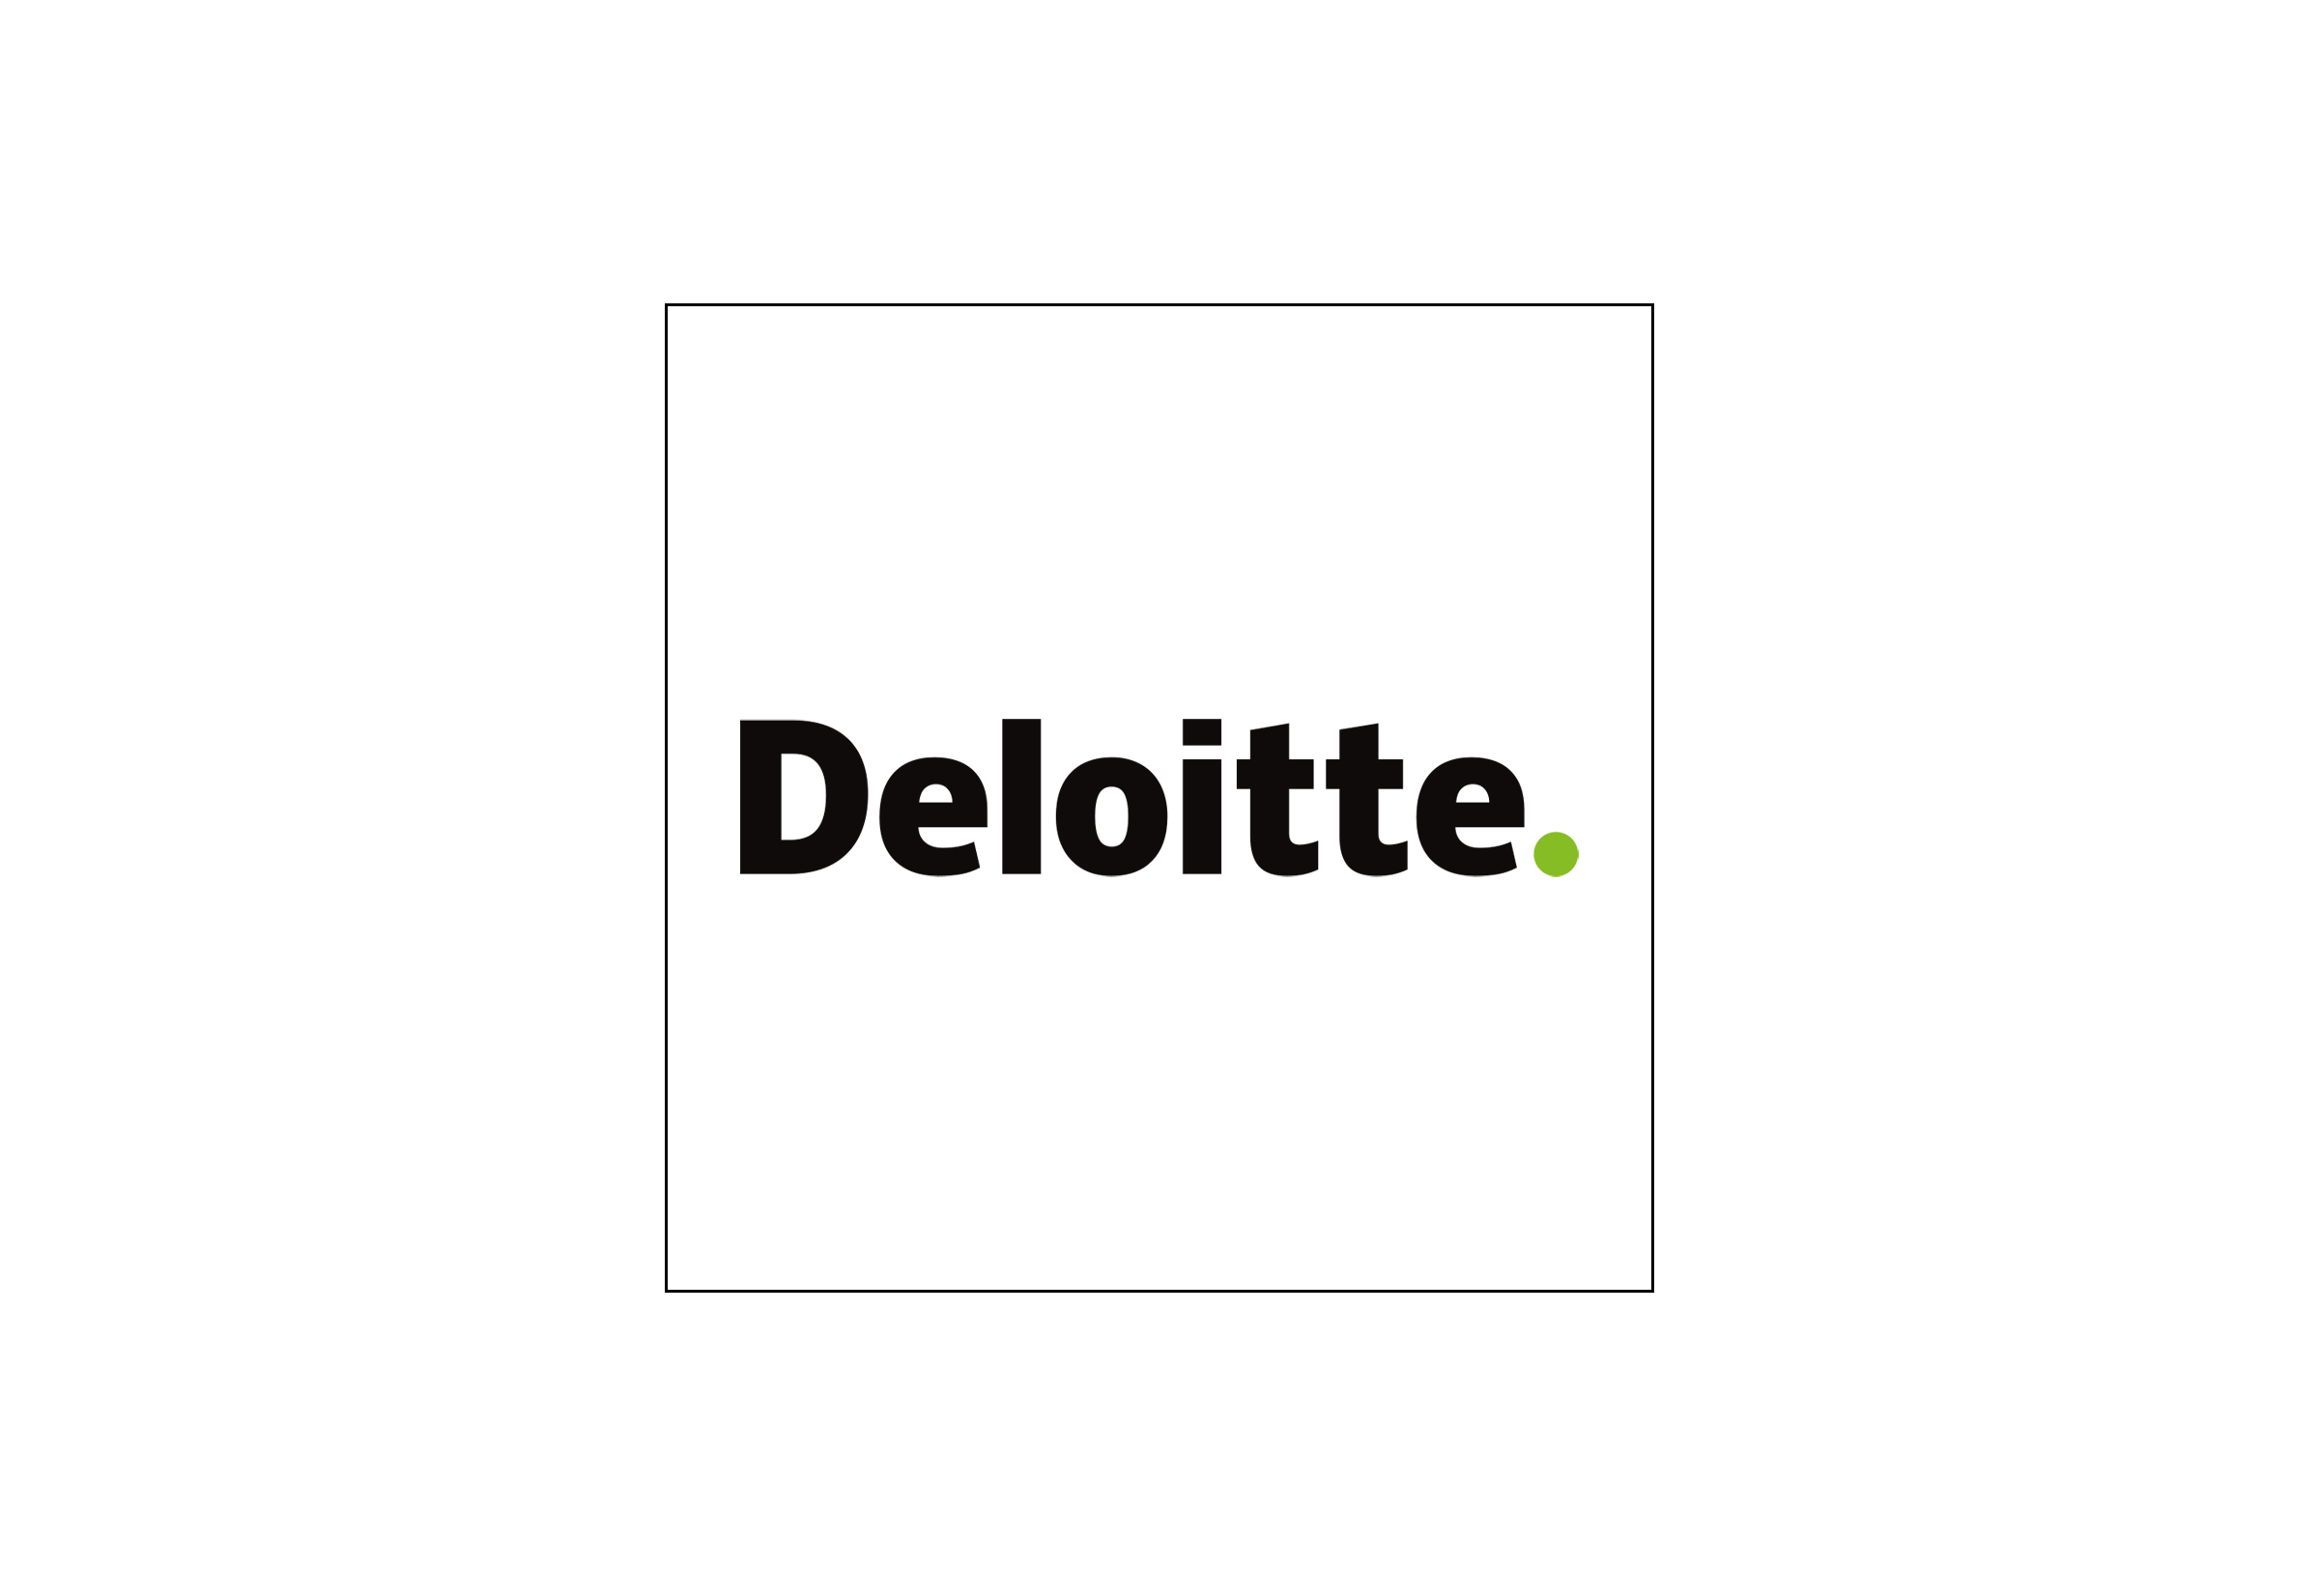 Deloitte Logo - Deloitte-Logo-01 - Making Changes Association